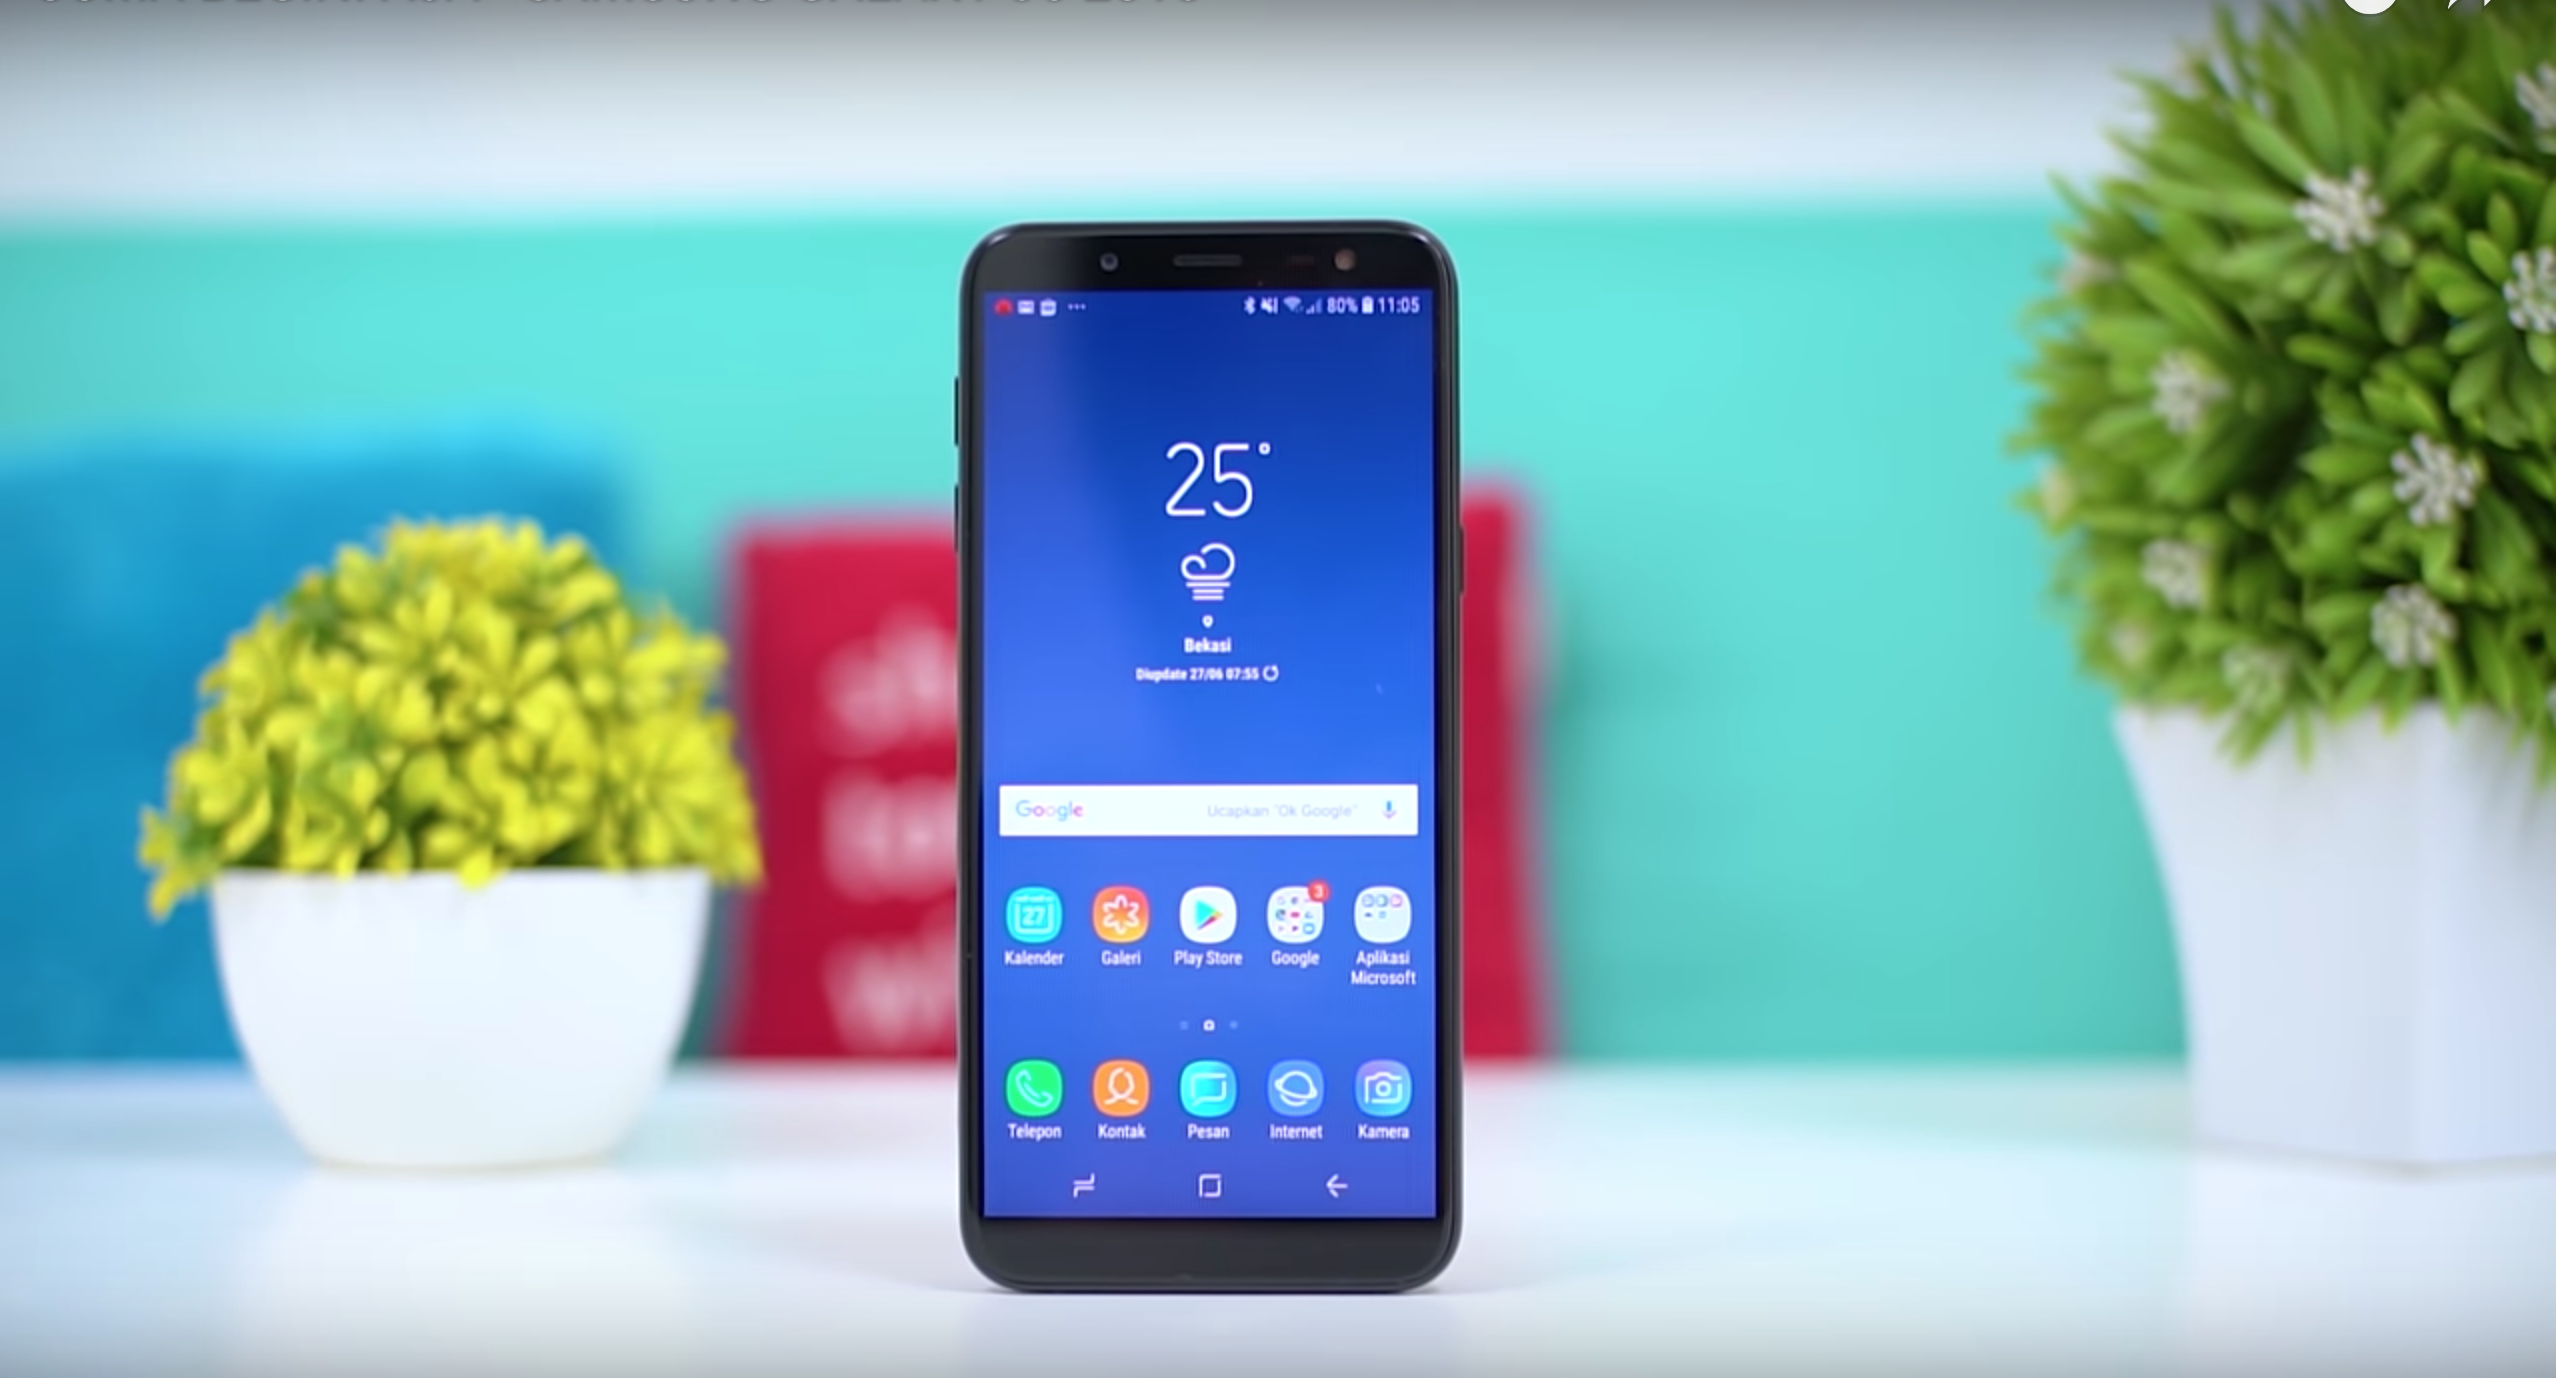 Samsung Galaxy J6 (2018) smartphone - πλεονεκτήματα και μειονεκτήματα